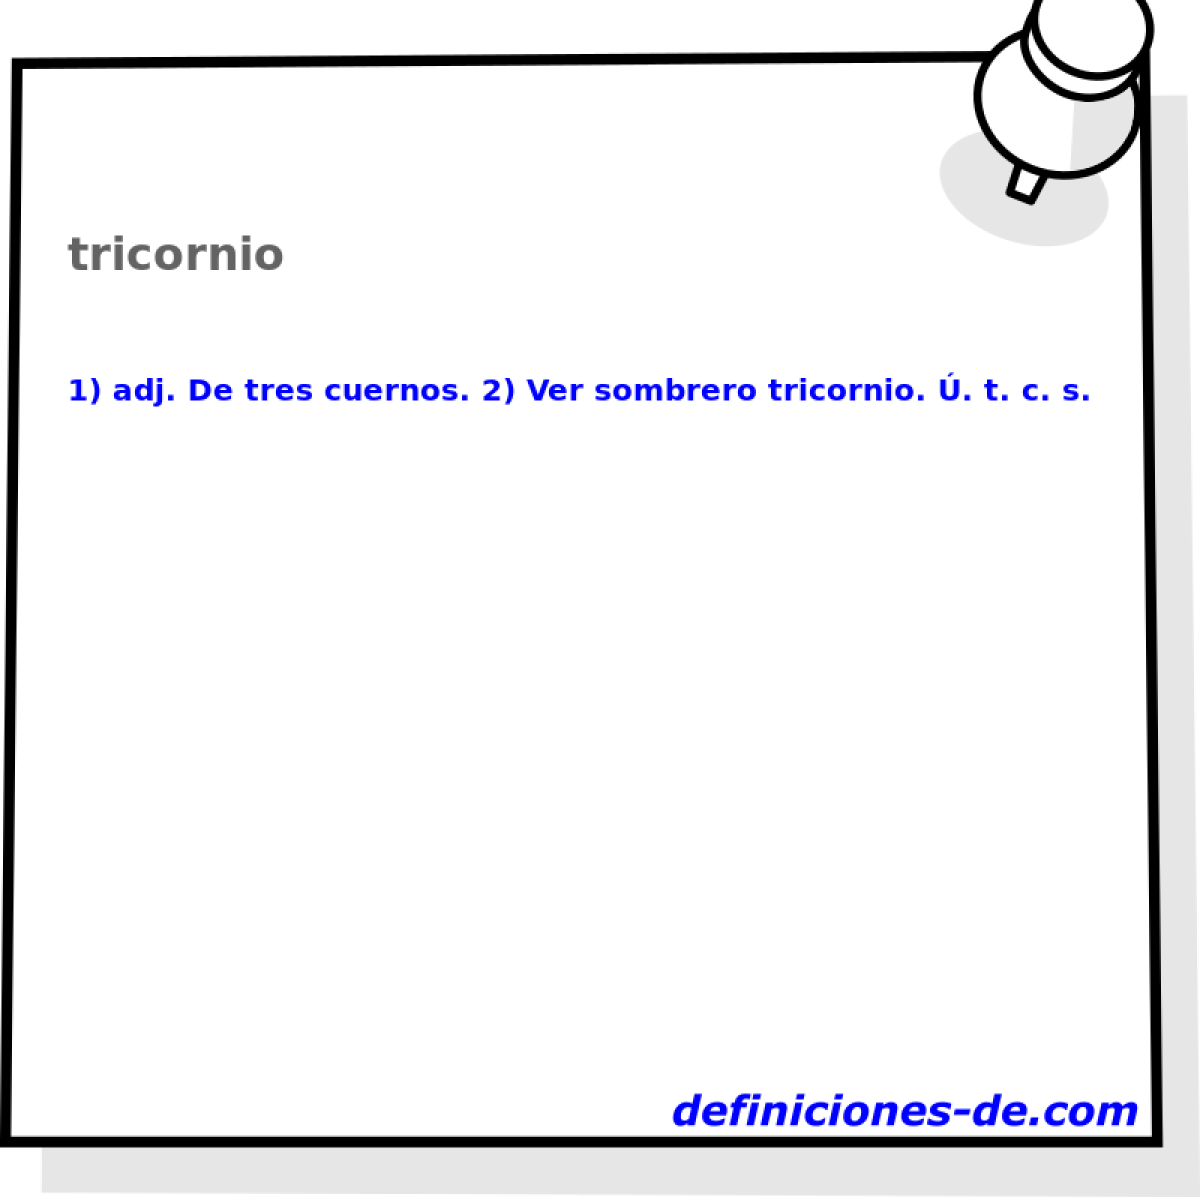 tricornio 